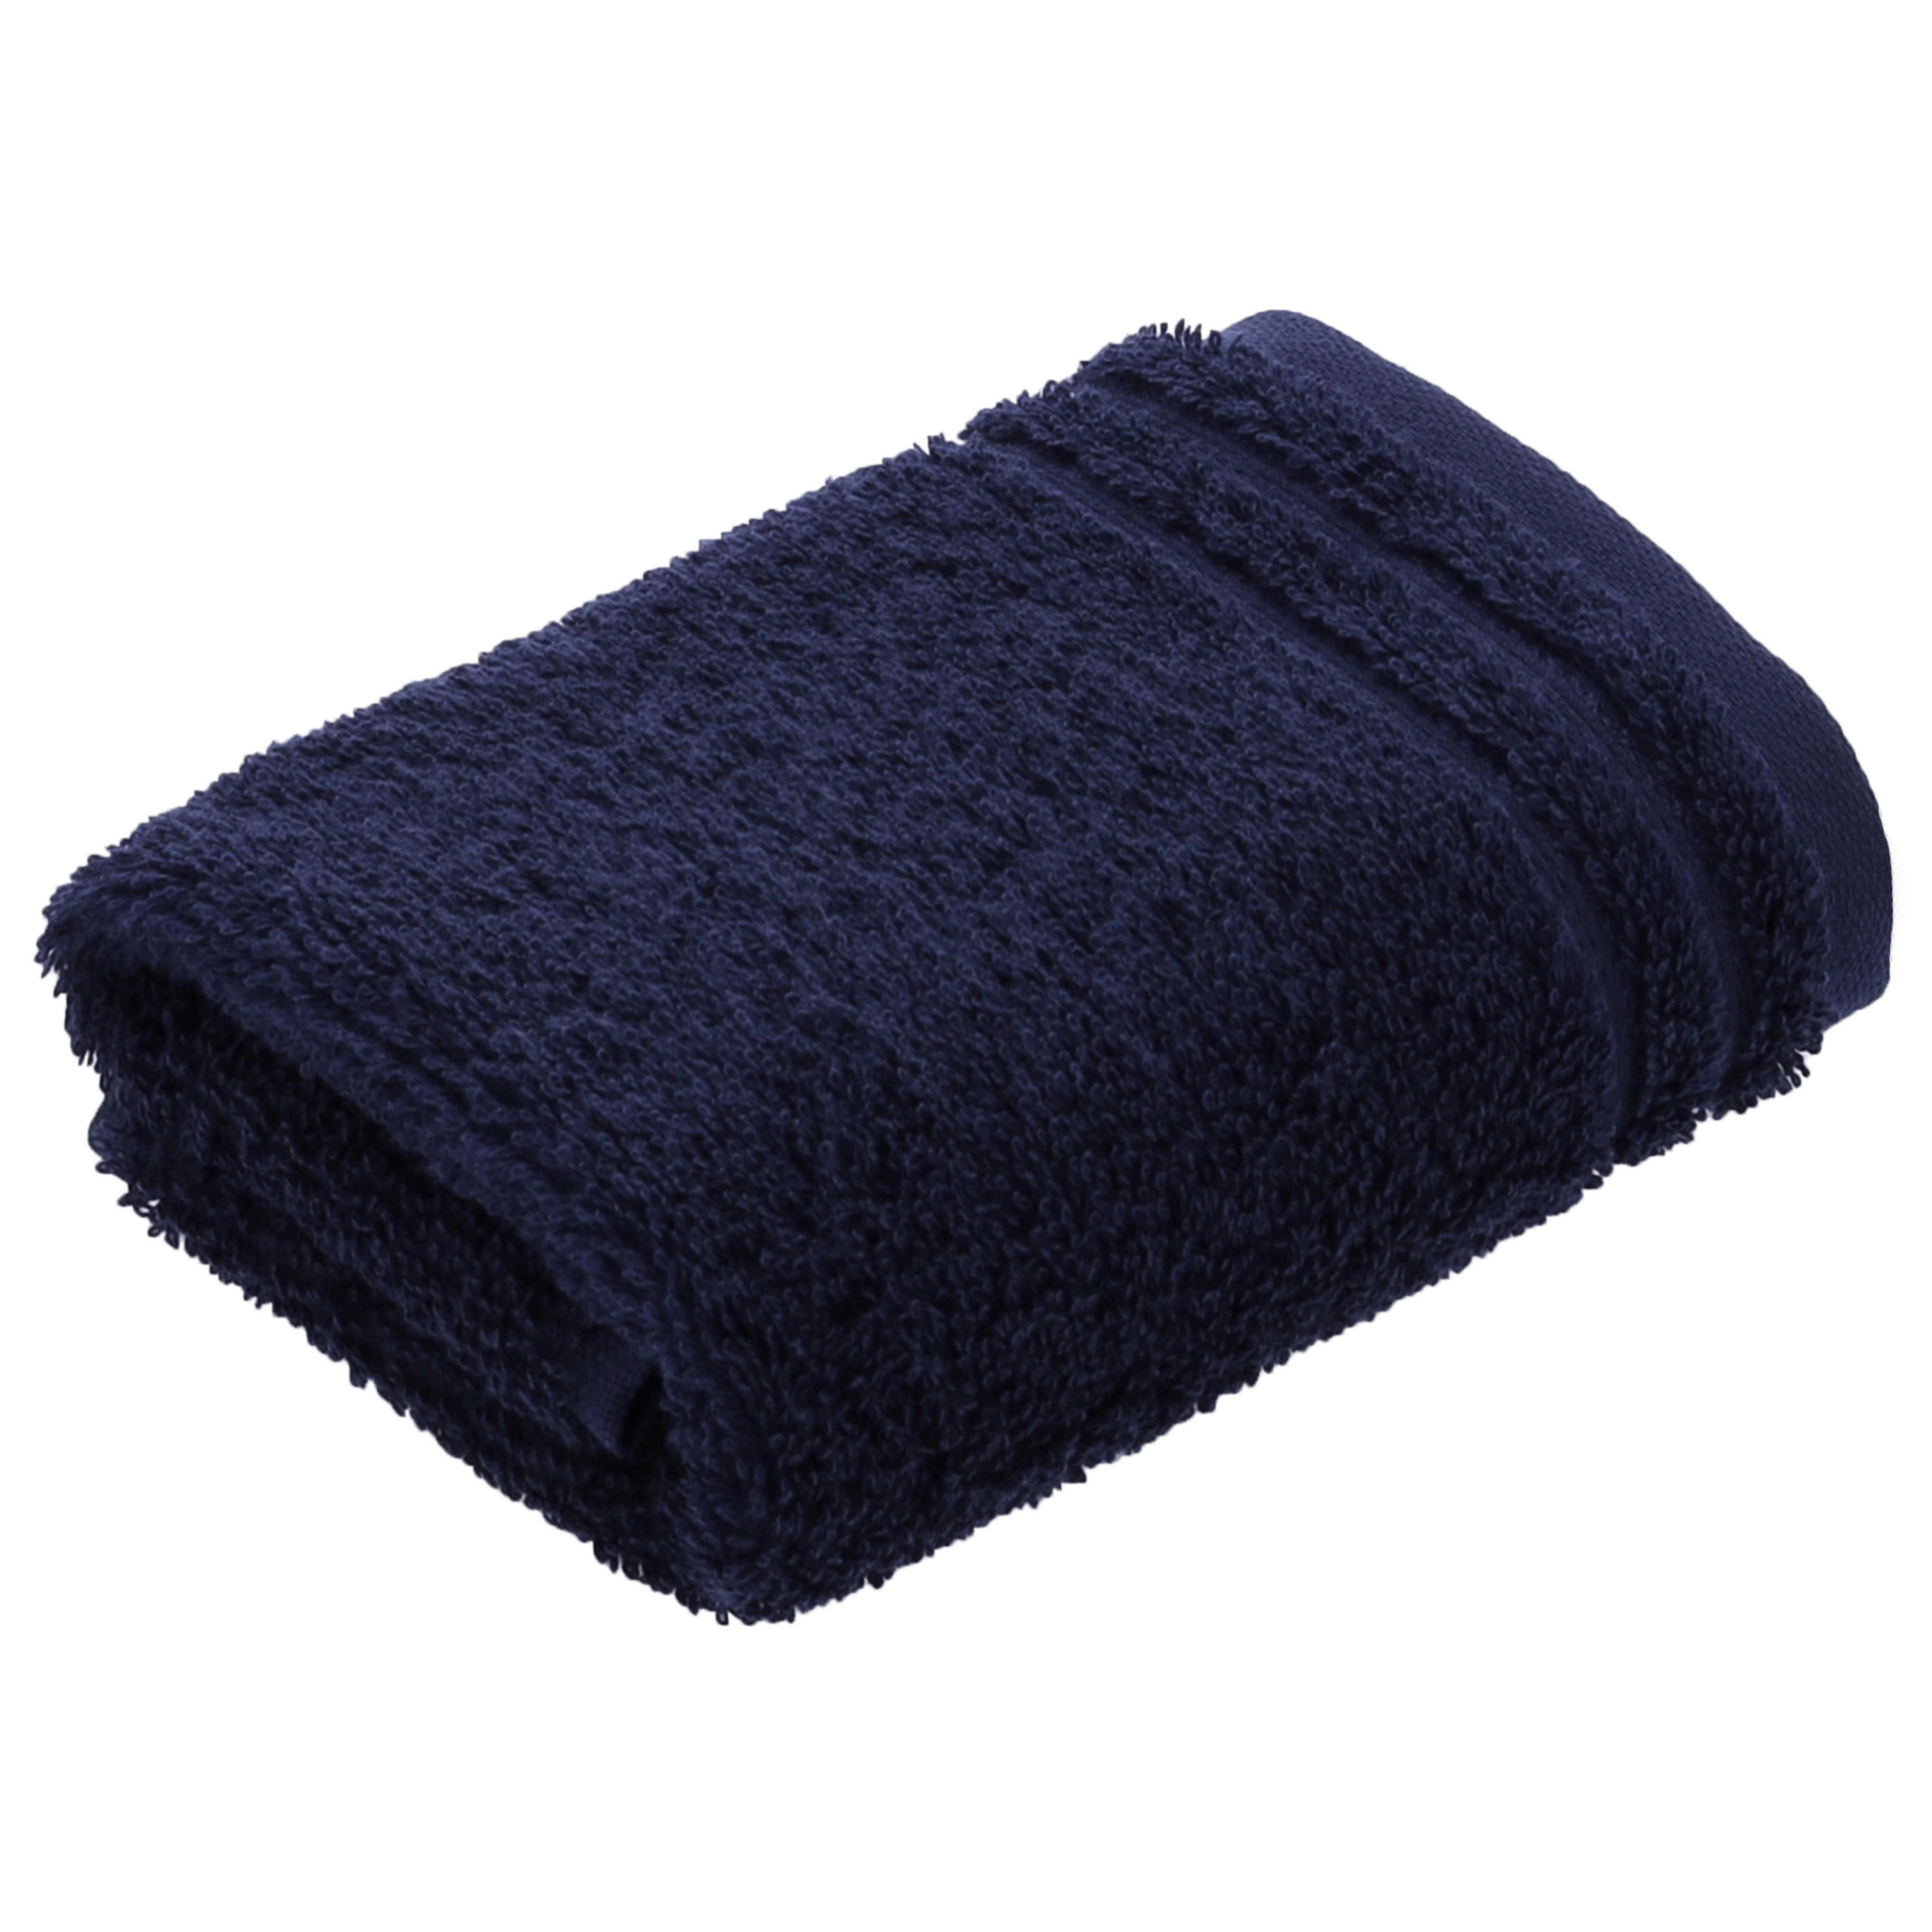 SEIFTUCH Calypso Feeling NOS Vossen Wäsche  - Blau, Basics, Textil (30/30cm) - Vossen